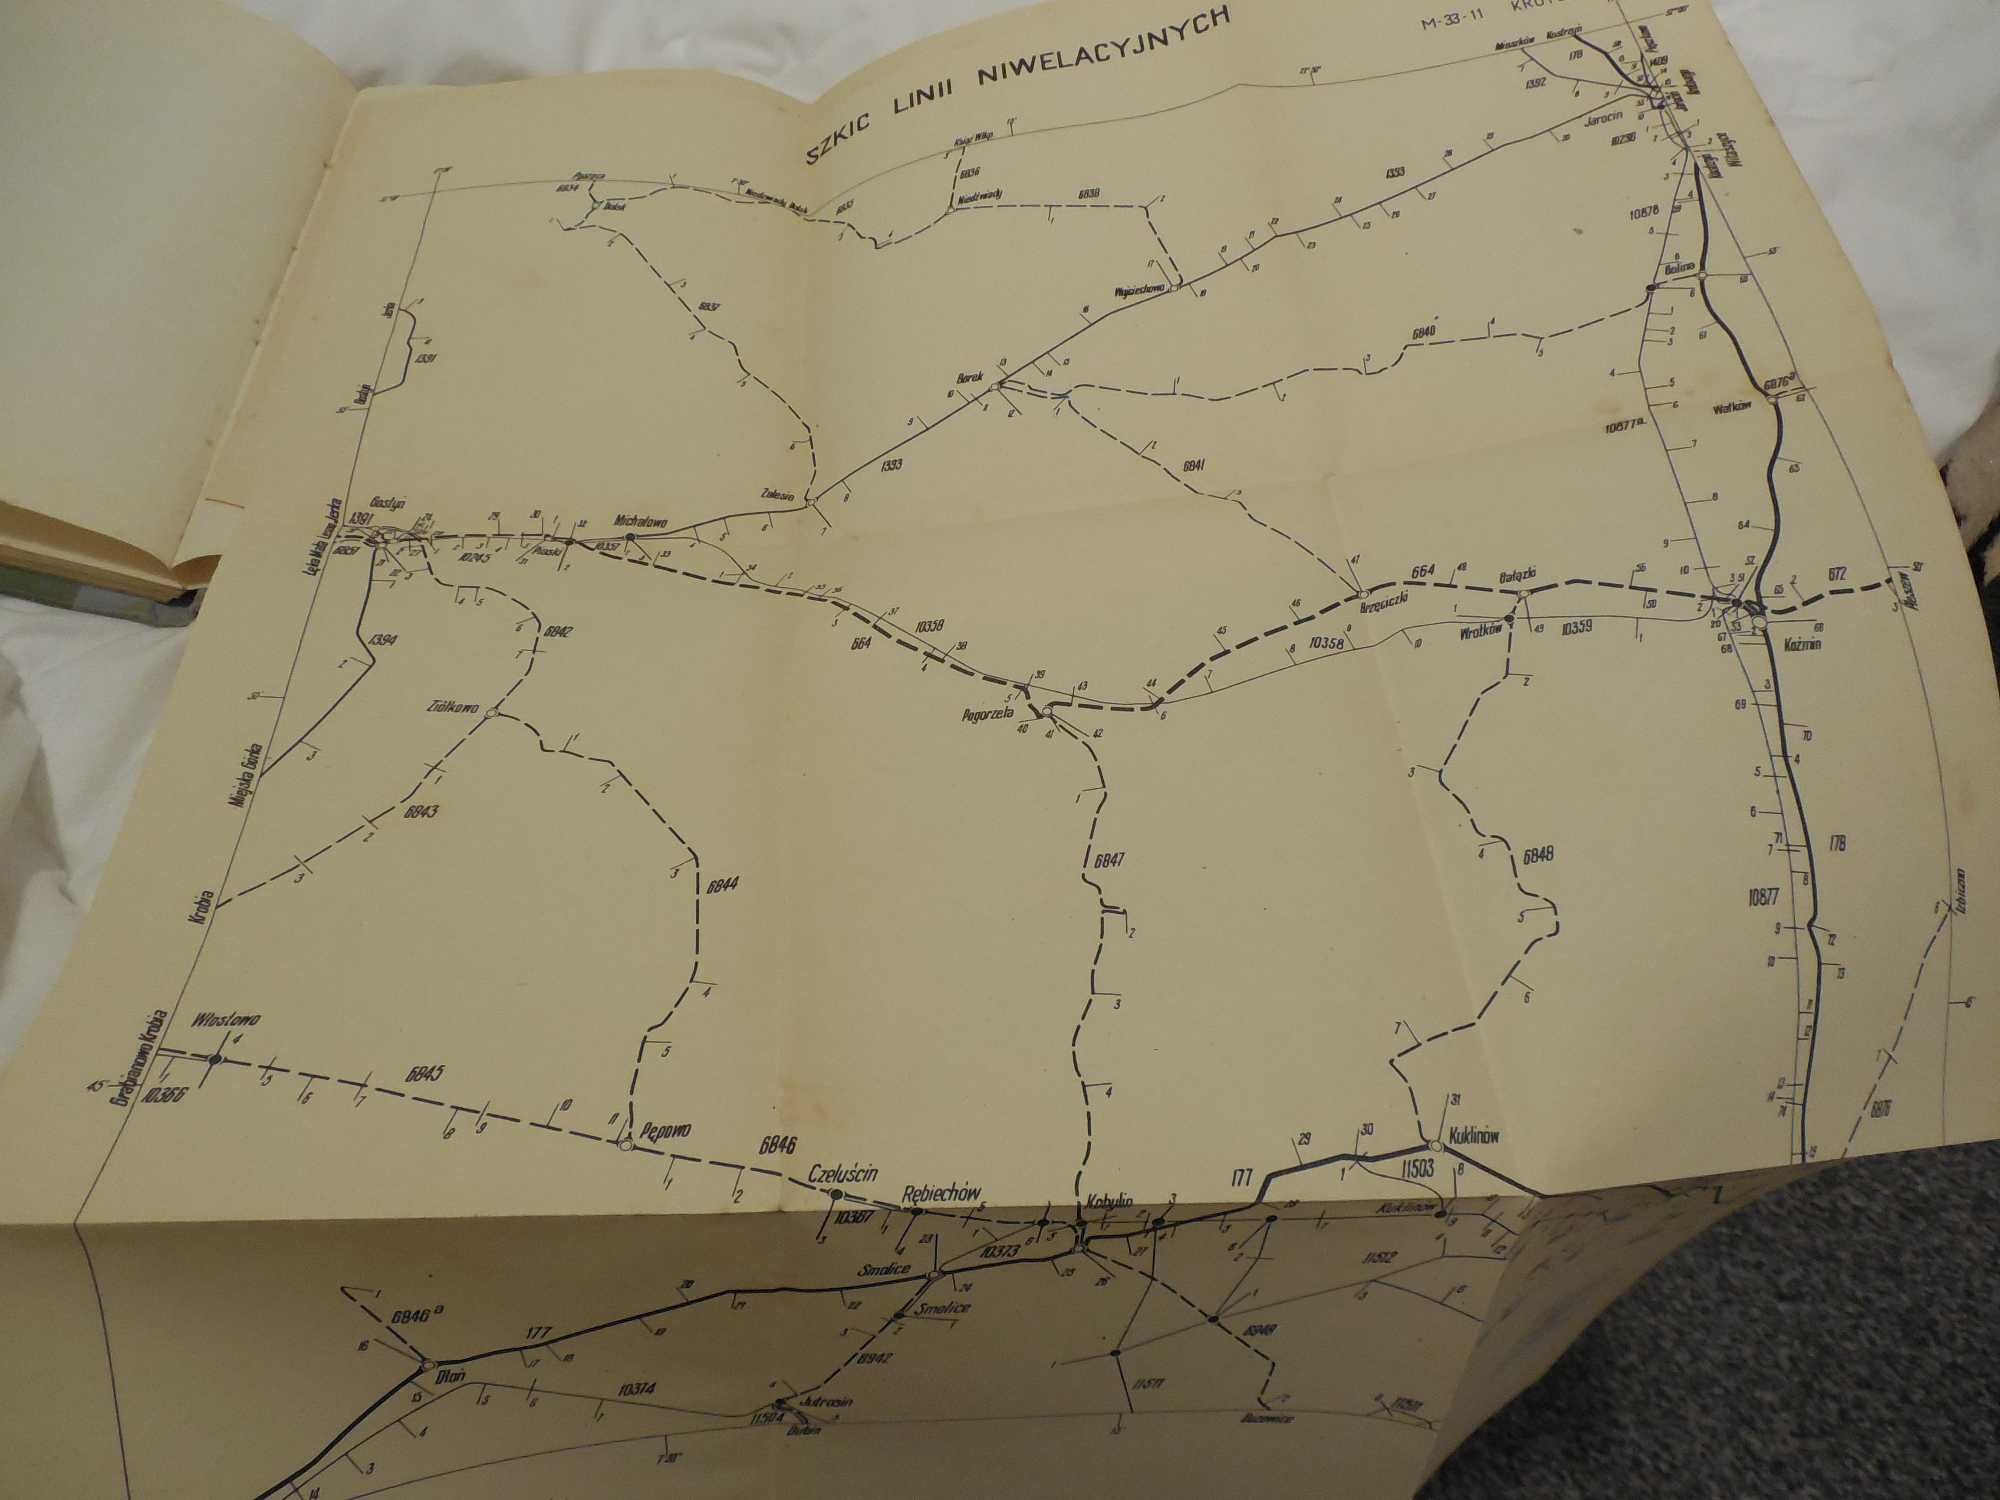 Katalog punktów niwelacyjnych stara mapa 60r Krotoszyn Kalisz geodezja